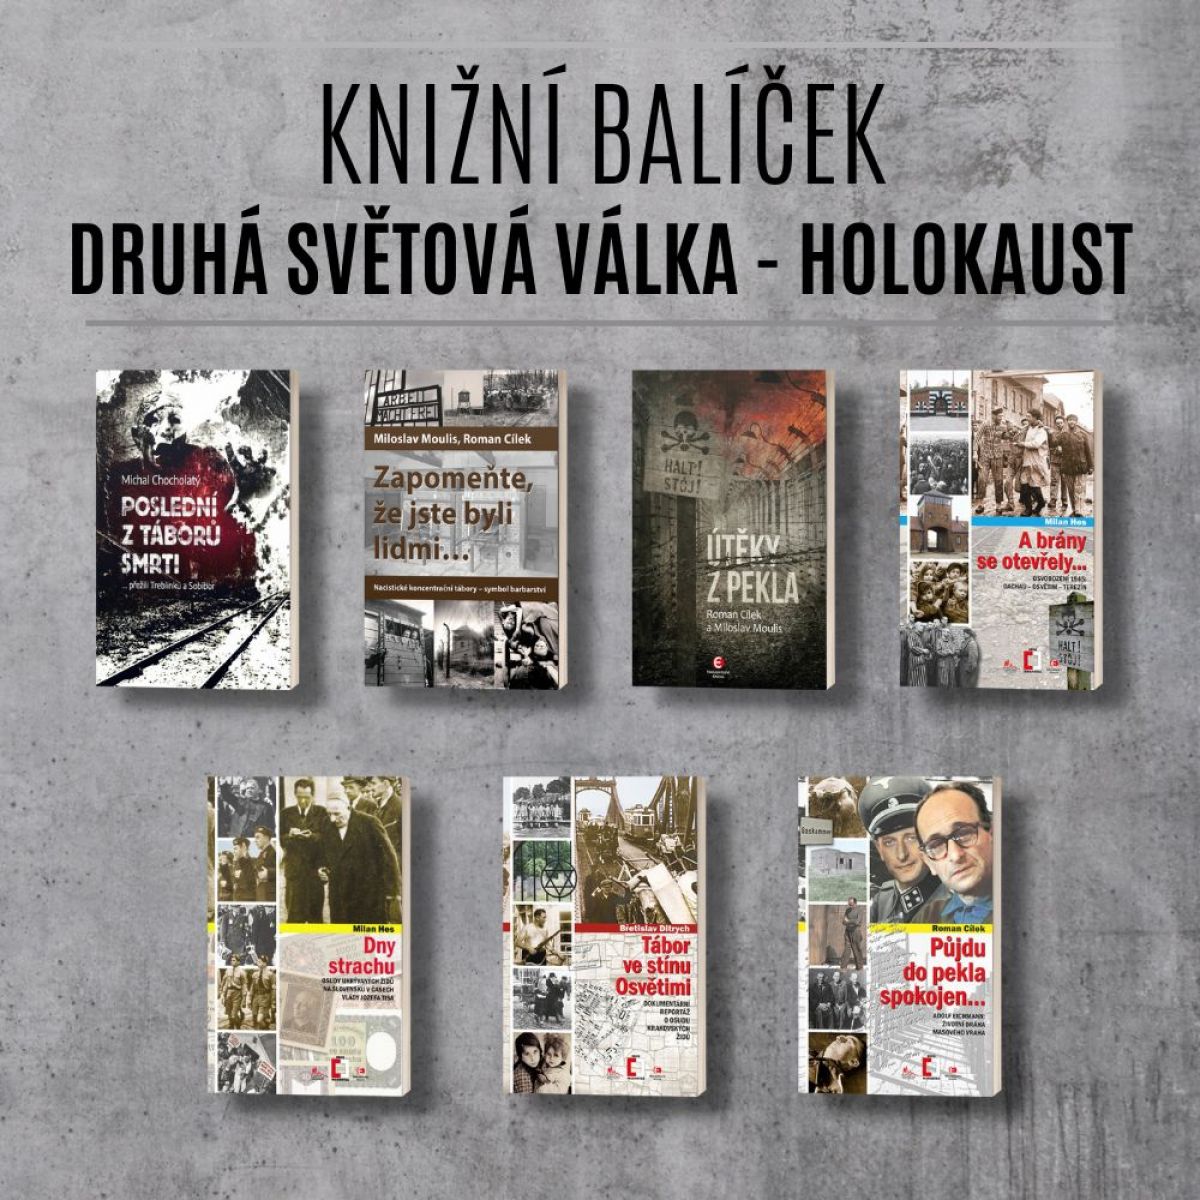 Druhá světová válka – holokaust (knižní balíček)